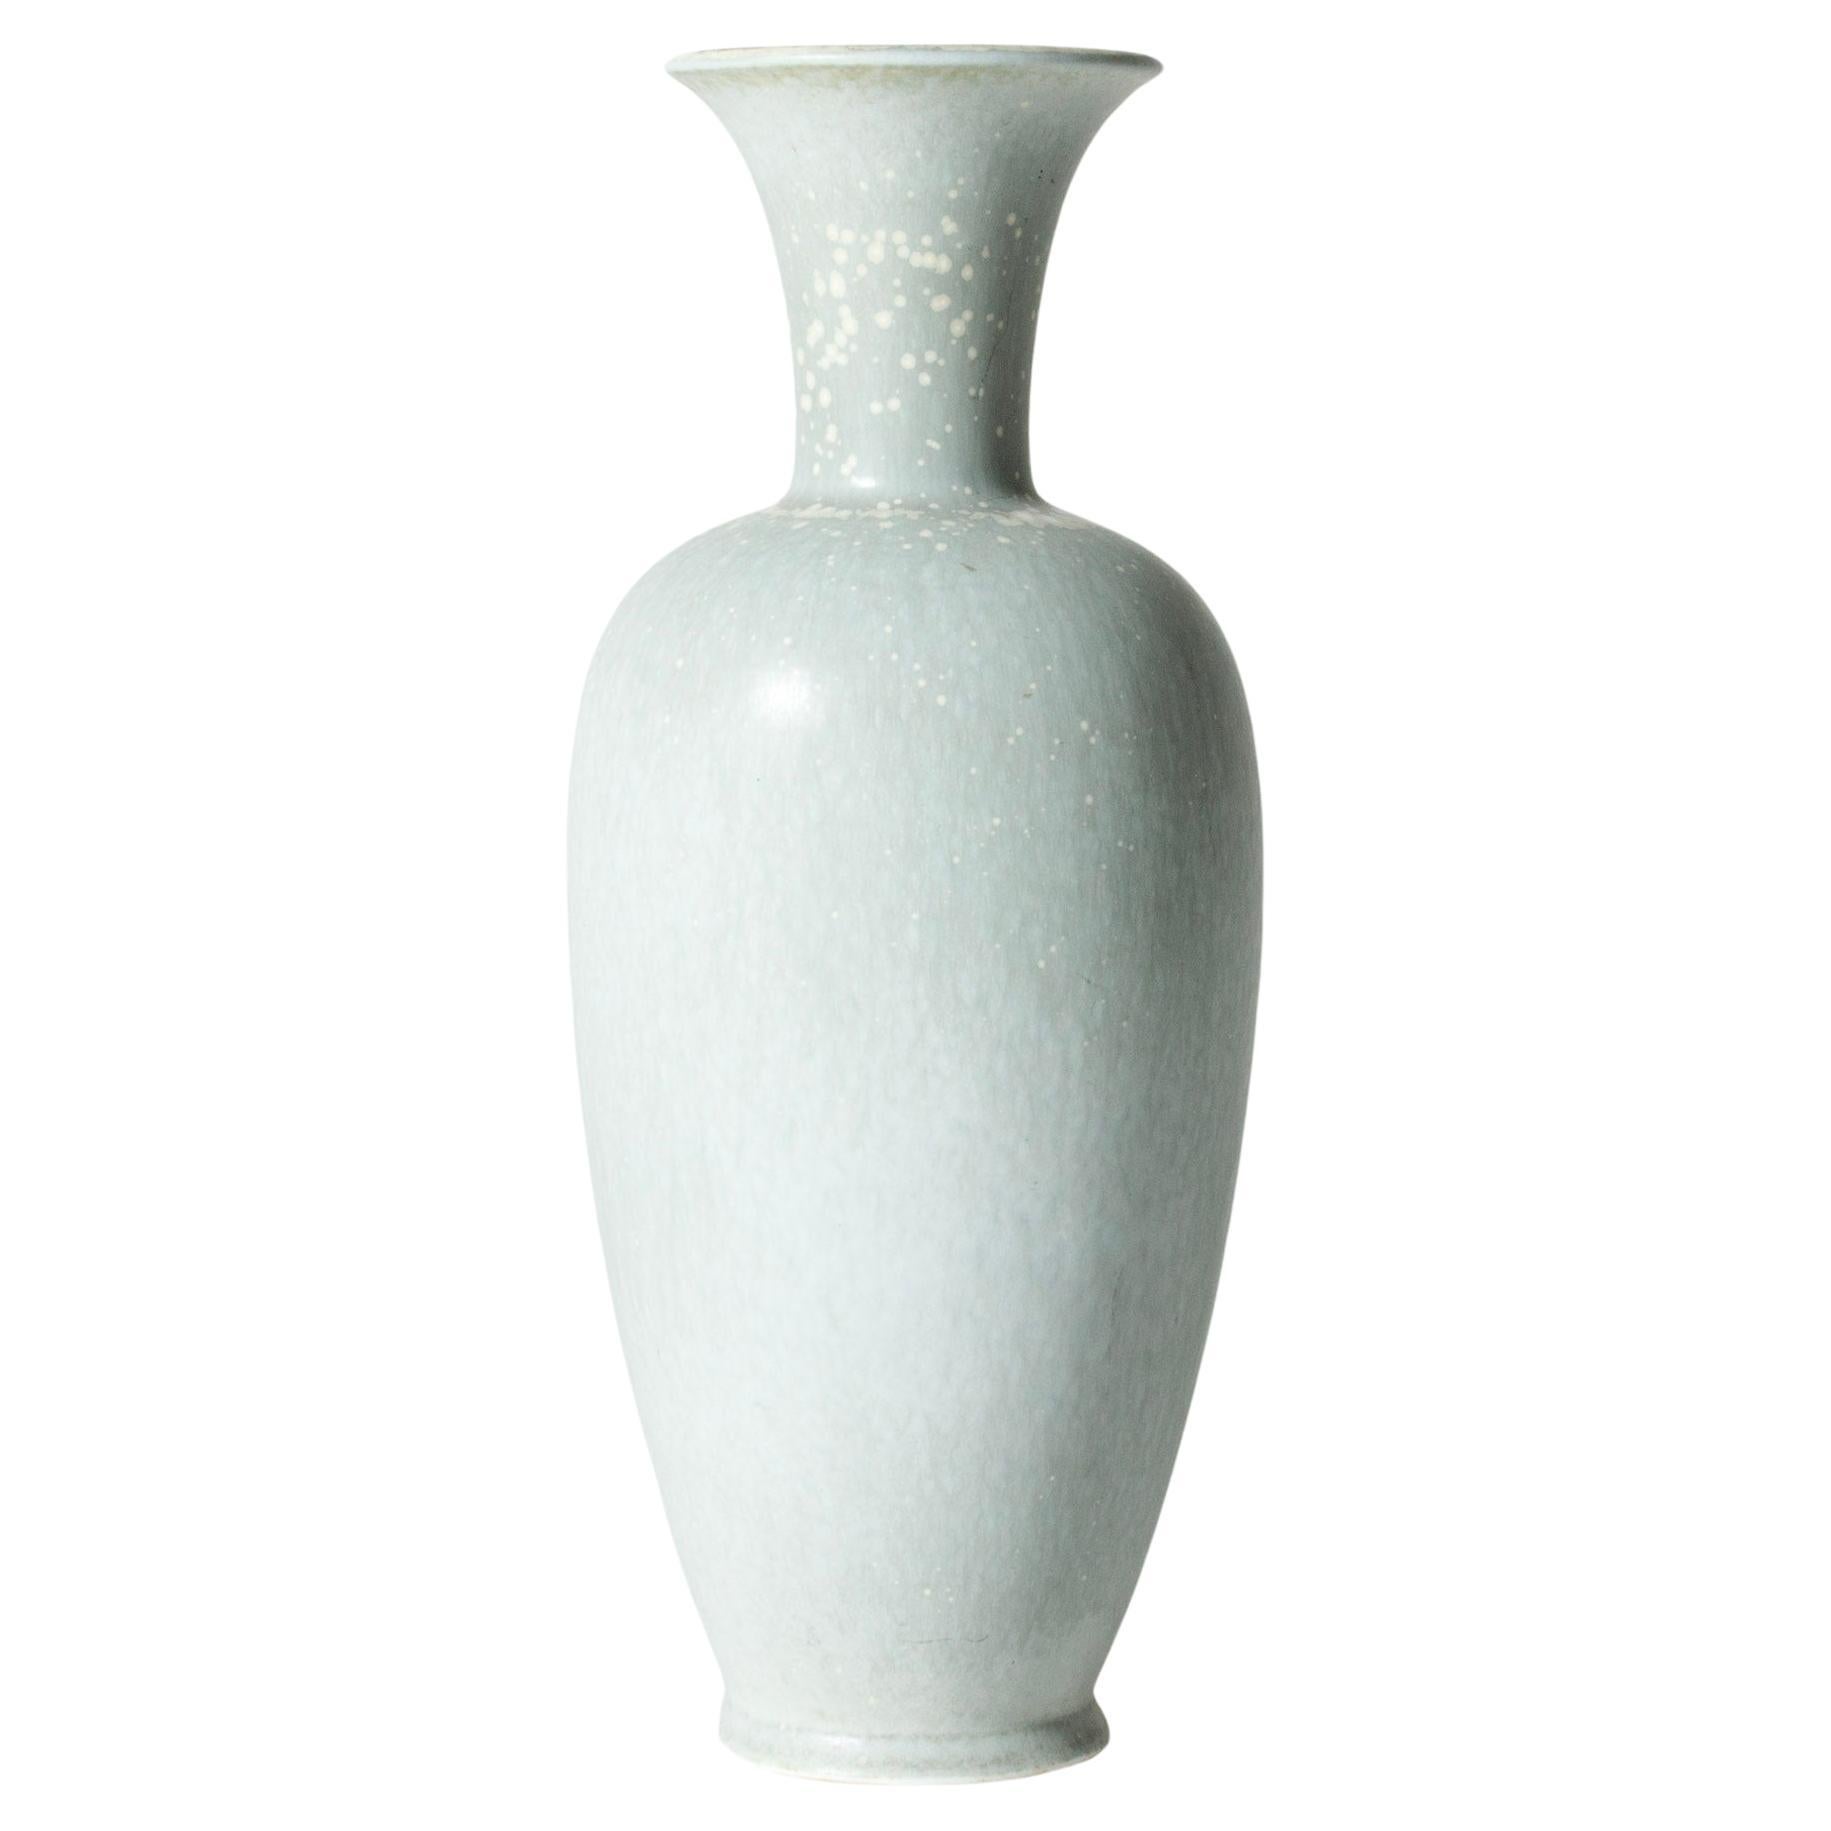 Midcentury Stoneware Vase by Gunnar Nylund for Rörstrand, Sweden, 1940s